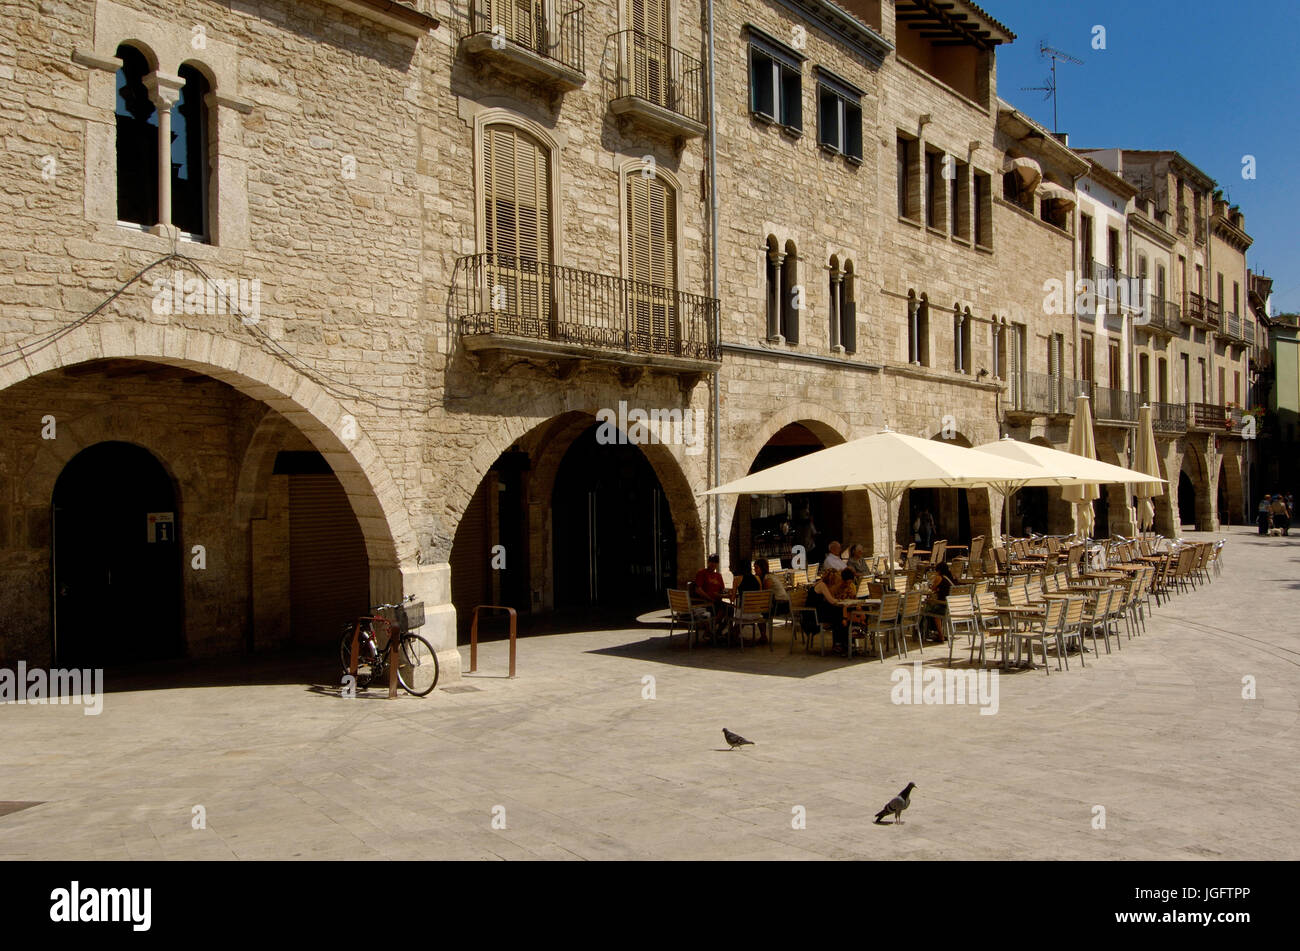 Main square of Banyoles, Girona province, Catalonia, Spain Stock Photo